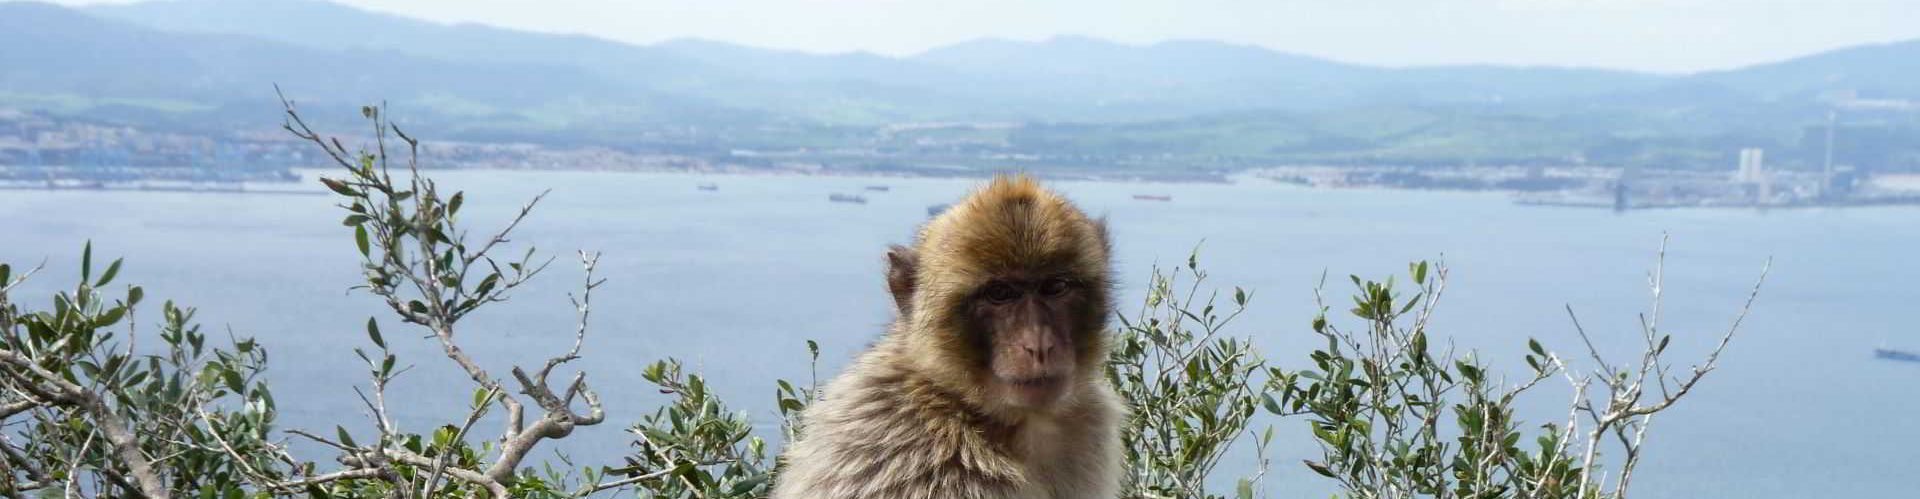 Barbary-macaque-Gibraltar